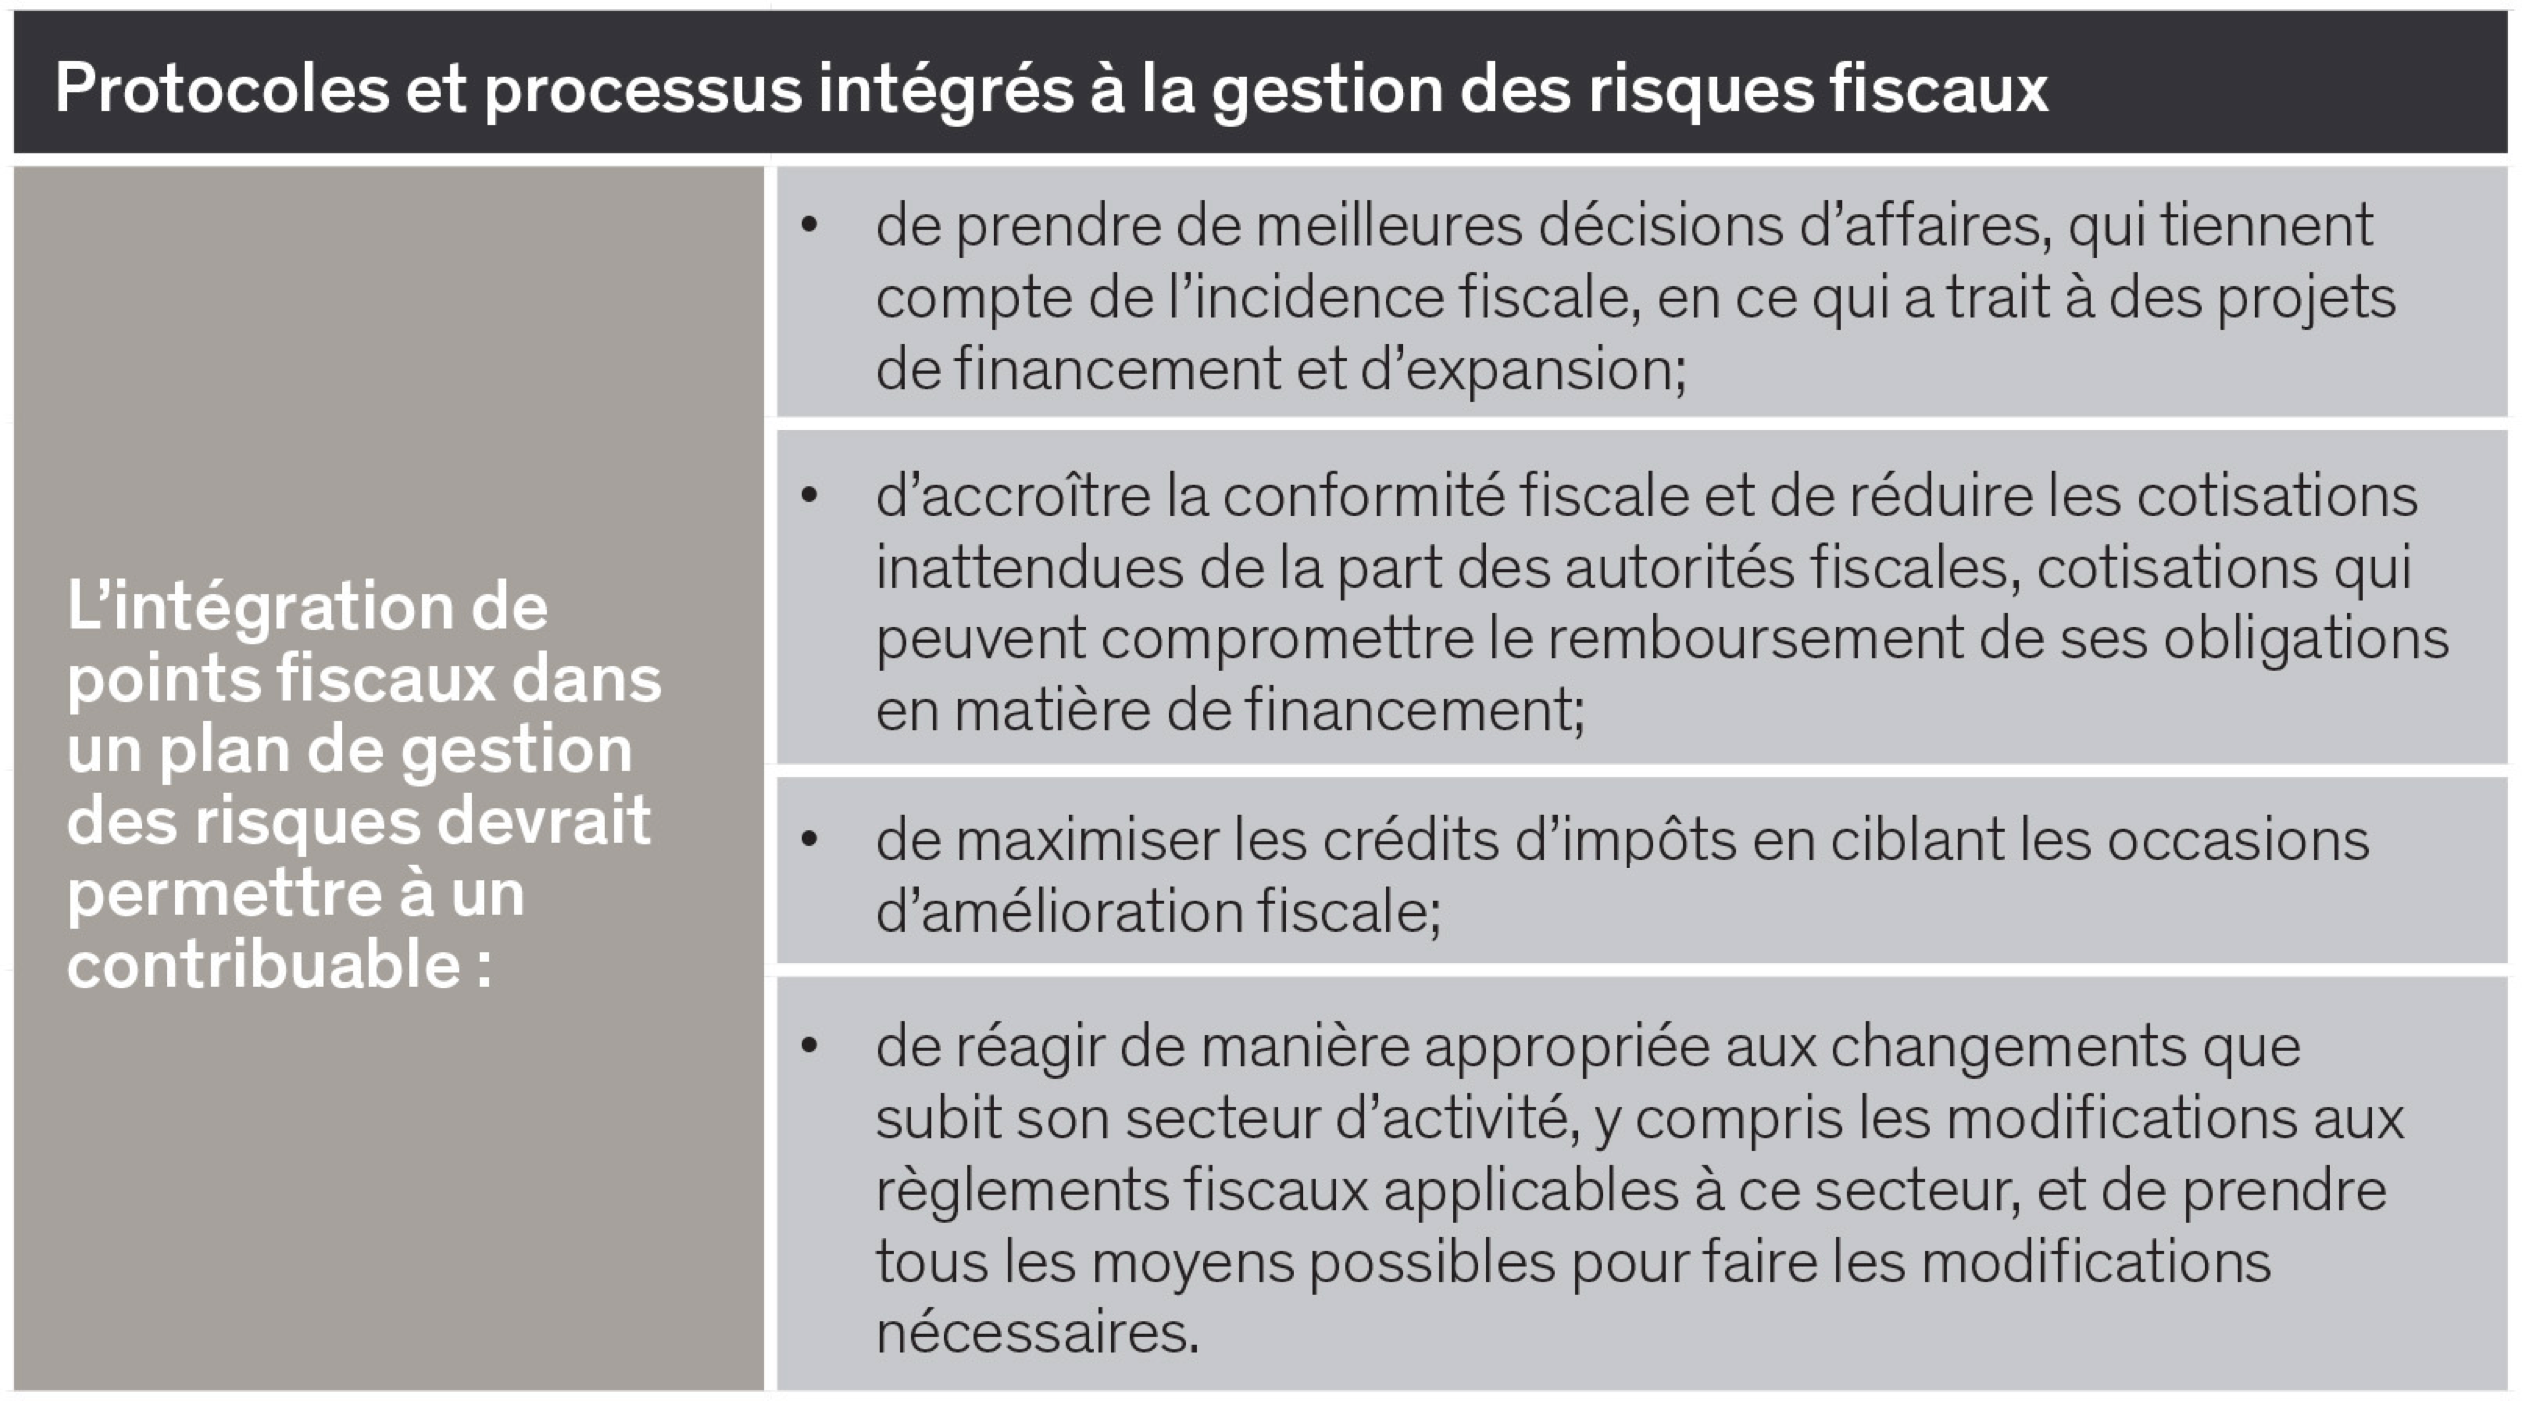 Protocoles et processus intégrés à la gestion des risques fiscaux